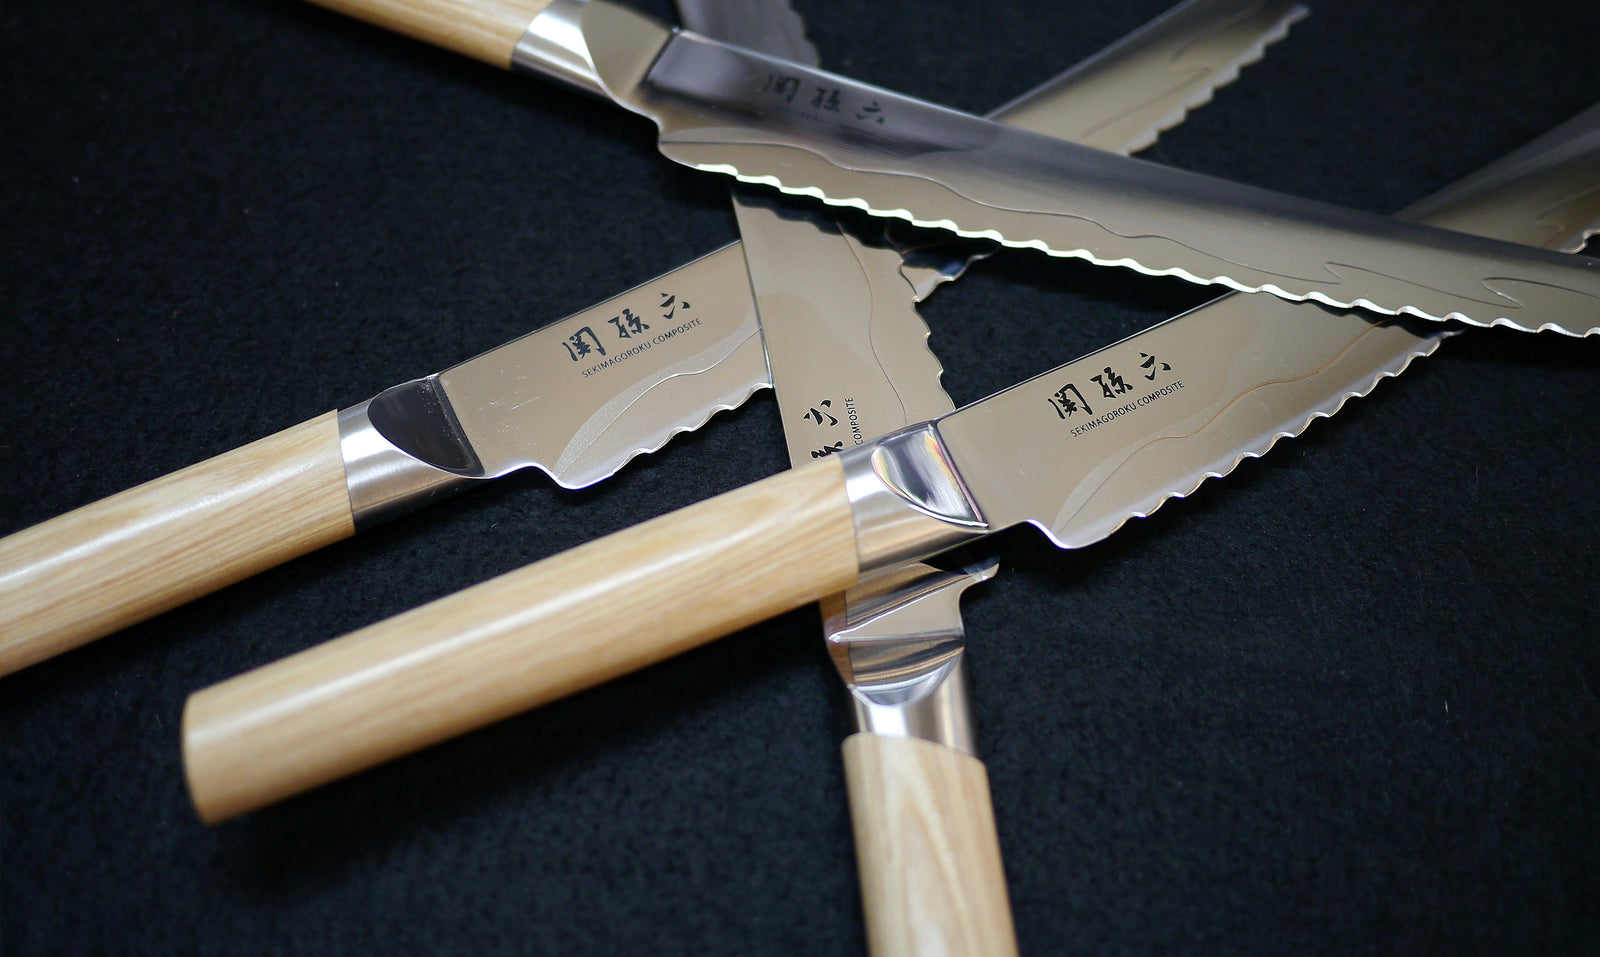 Cuchillos de cocina (III): los cuchillos japoneses - Blog de